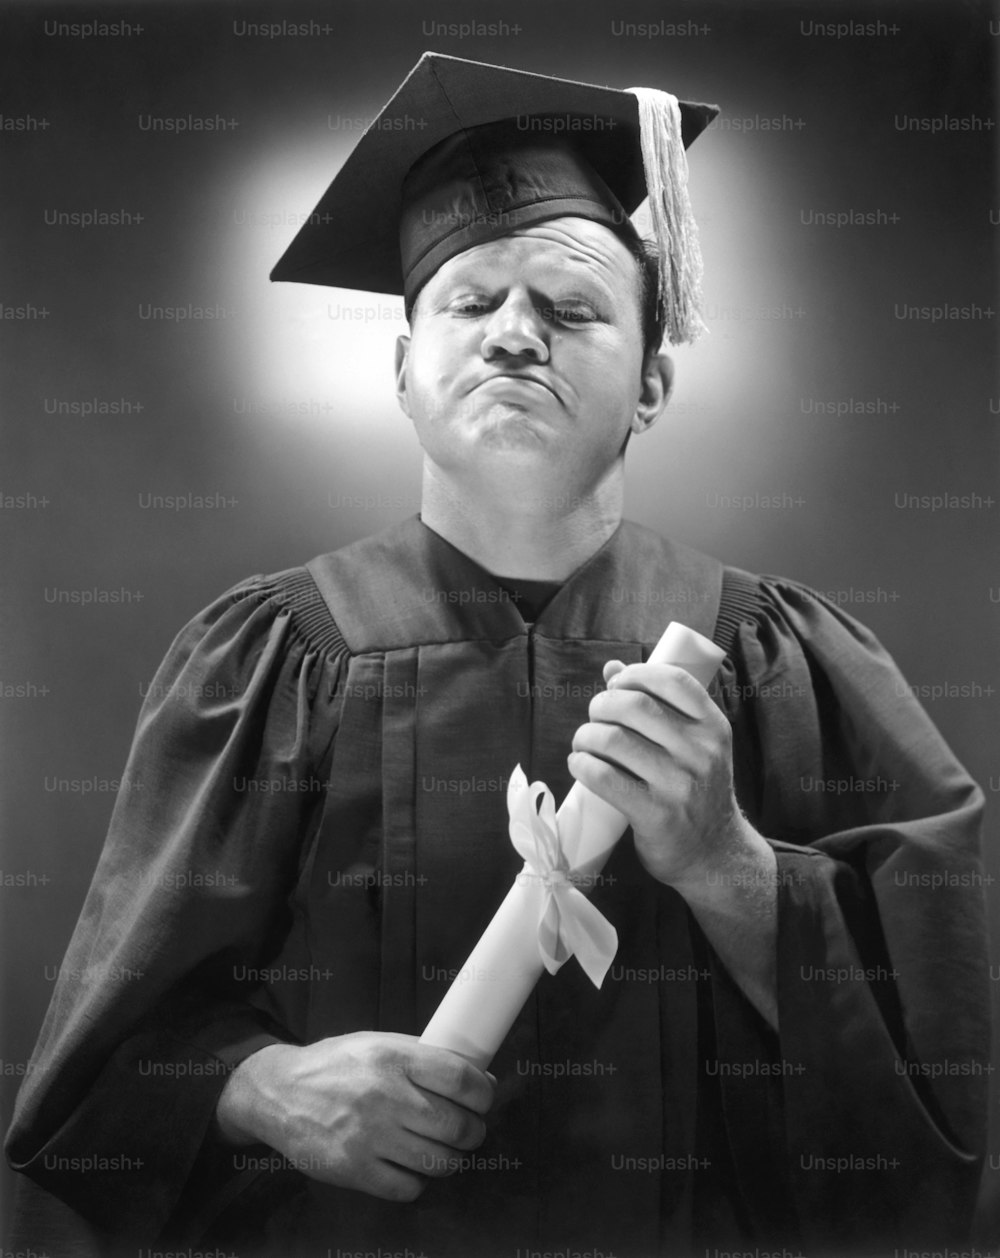 STATI UNITI - 1950 circa: Uomo in vestaglia che tiene il diploma.